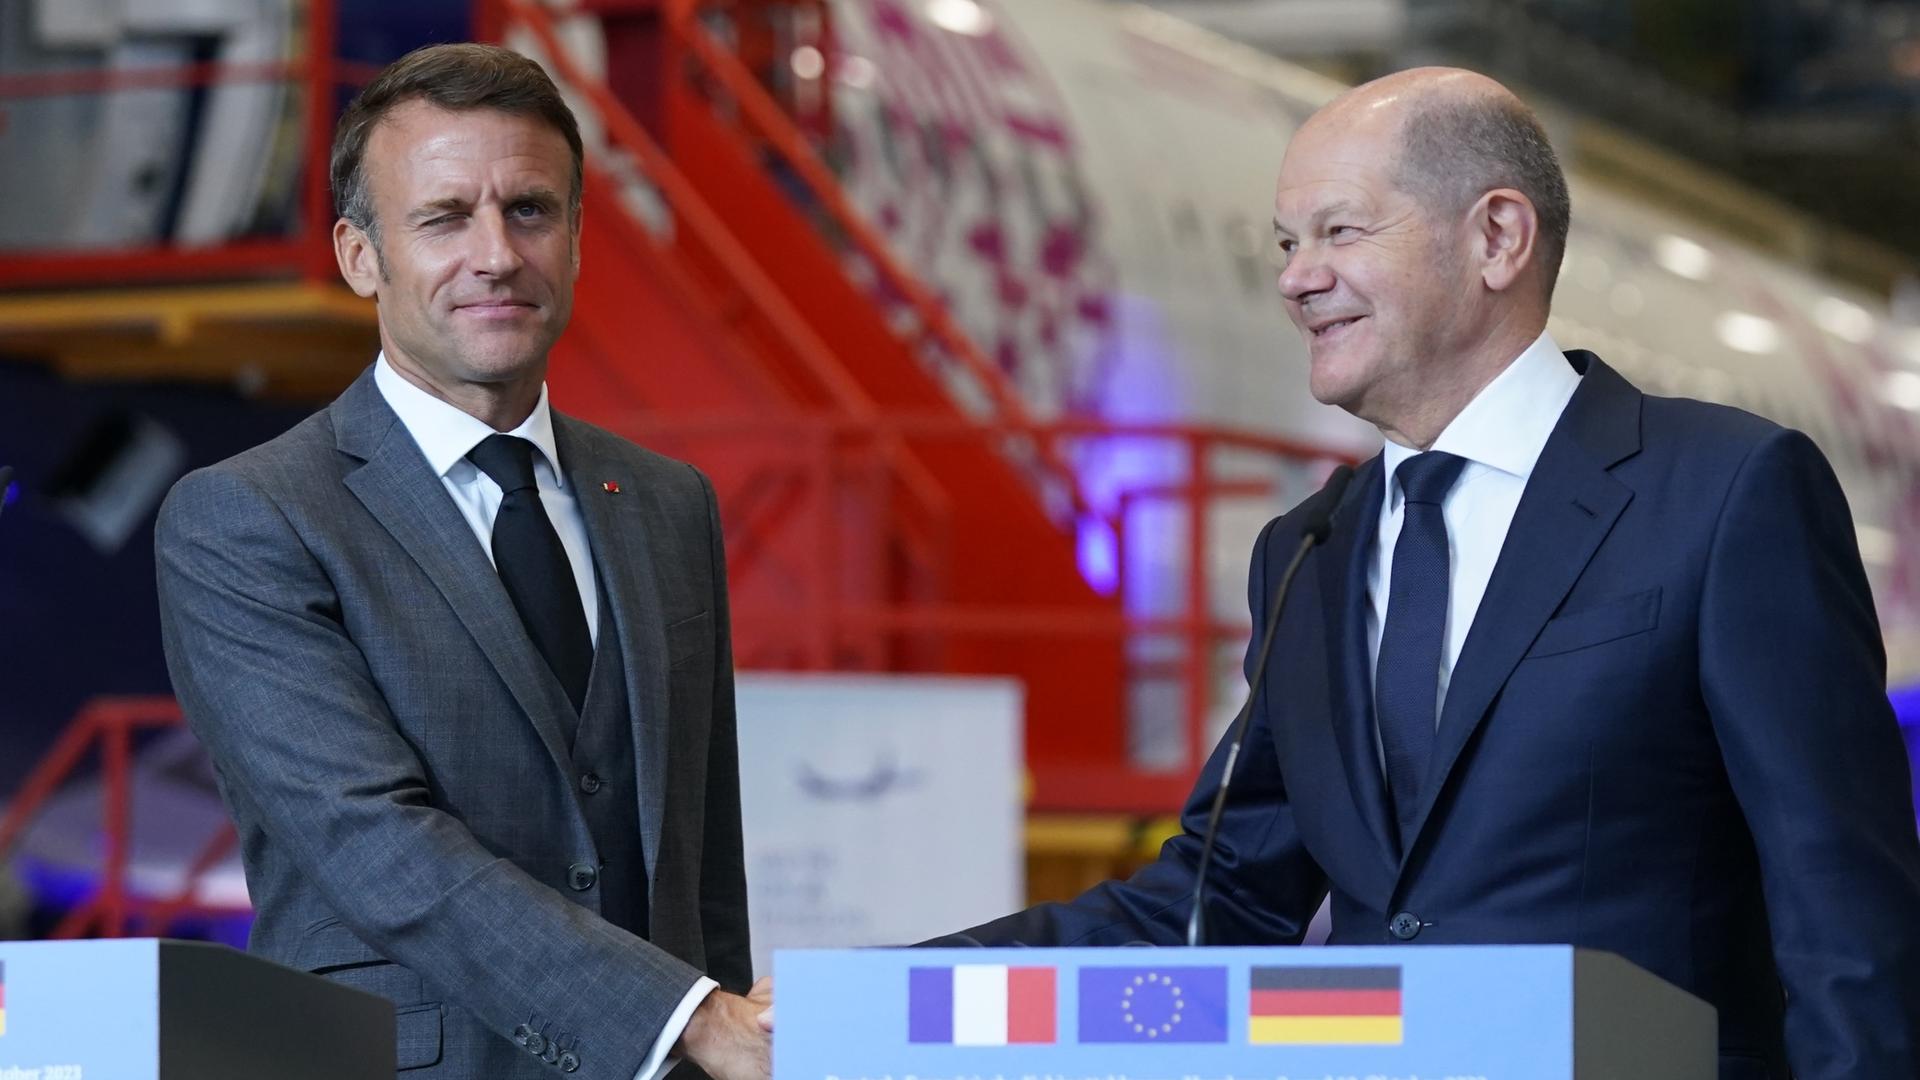 Bundeskanzler Olaf Scholz (SPD) und Emmanuel Macron, Staatspräsident von Frankreich, reichen sich nach einem gemeinsamen Statement nach dem Besuch auf dem Airbus-Werksgelände in Hamburg-Finkenwerder die Hand. 